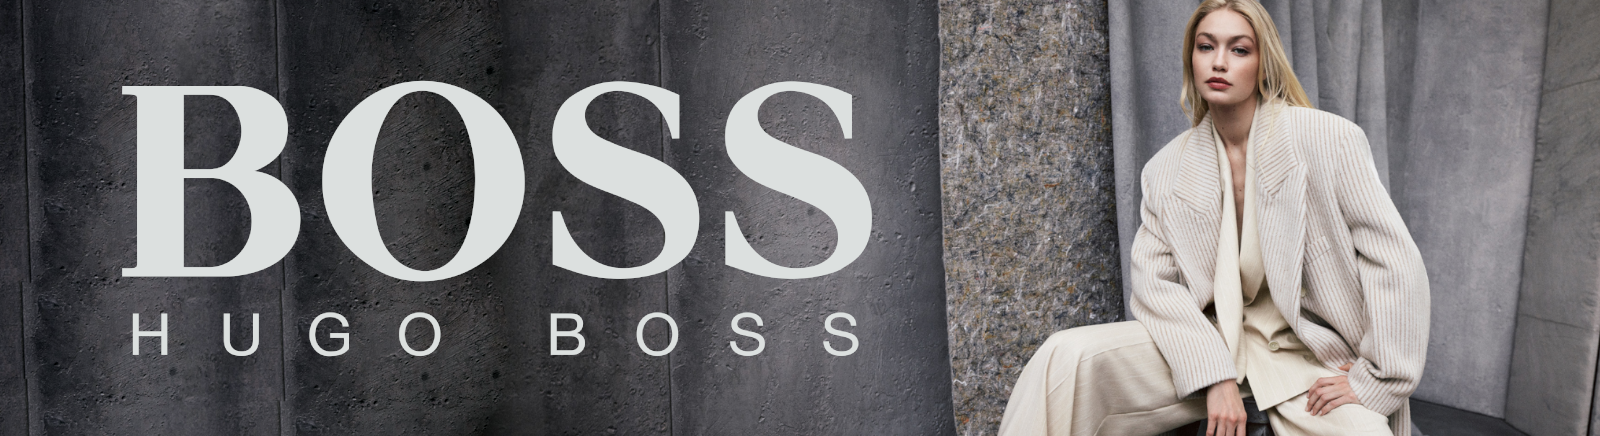 BOSS Boots für Herren im Online-Shop von GISY kaufen